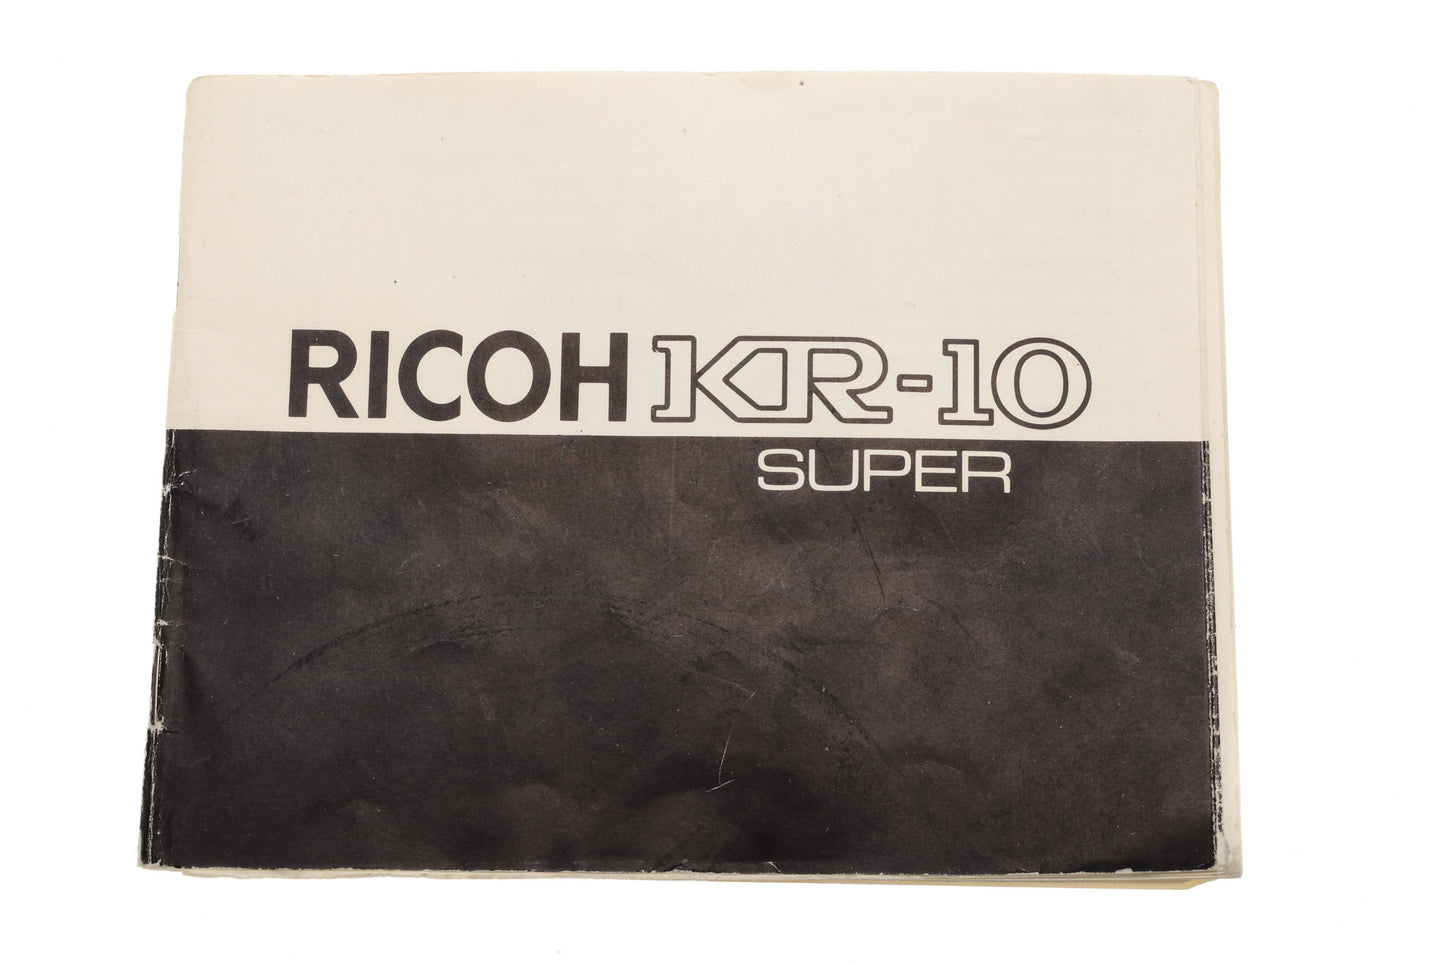 Ricoh KR-10 Super Instructions